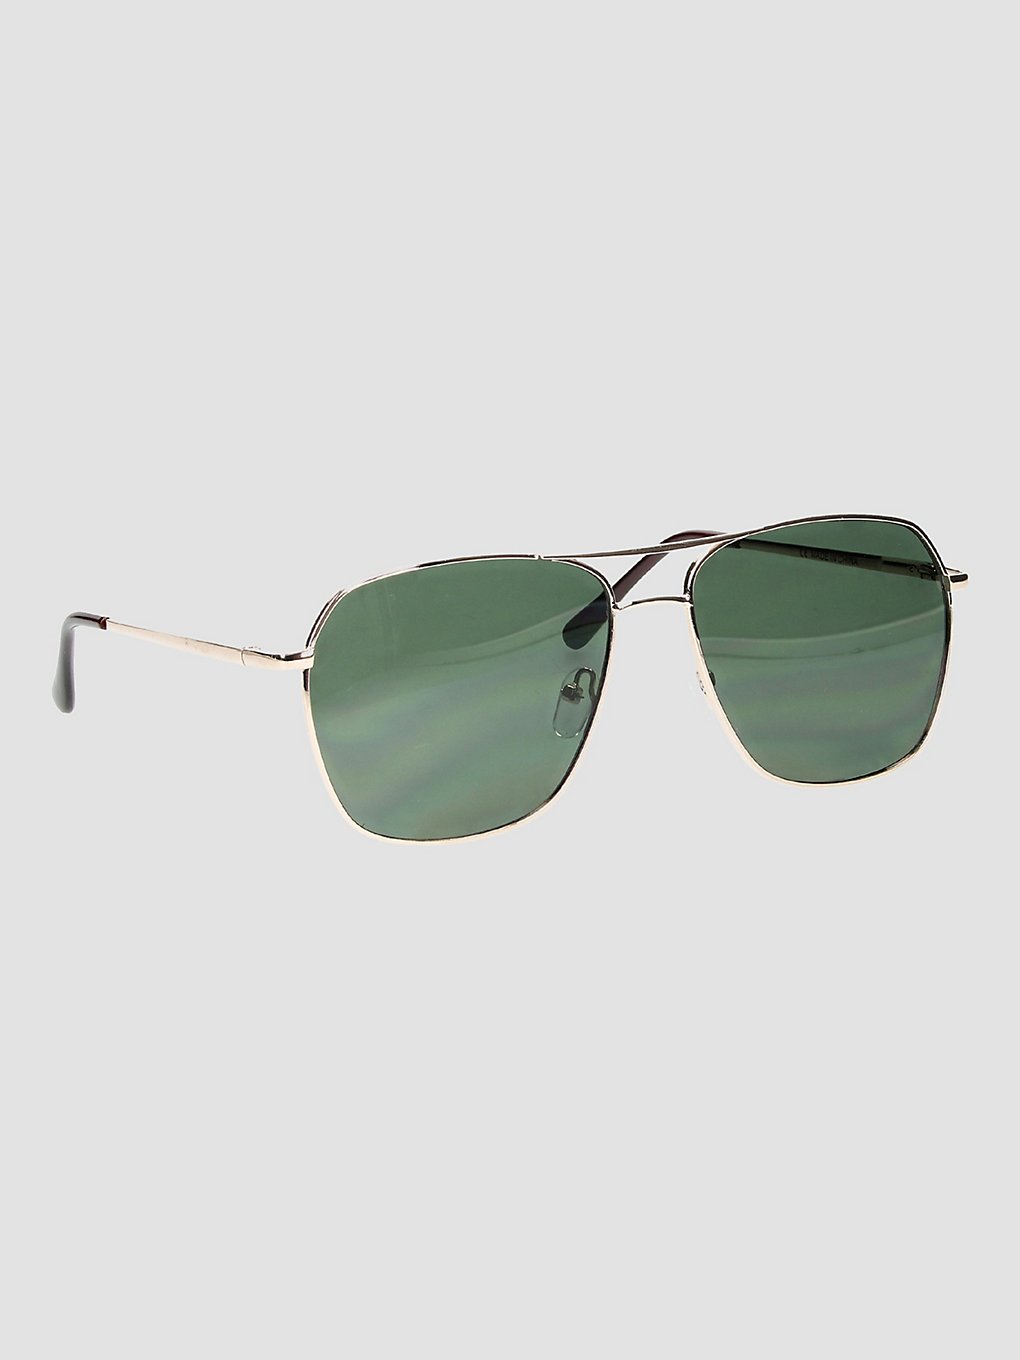 Empyre Hayes Translucent Square Aviator Sunglasses translucent